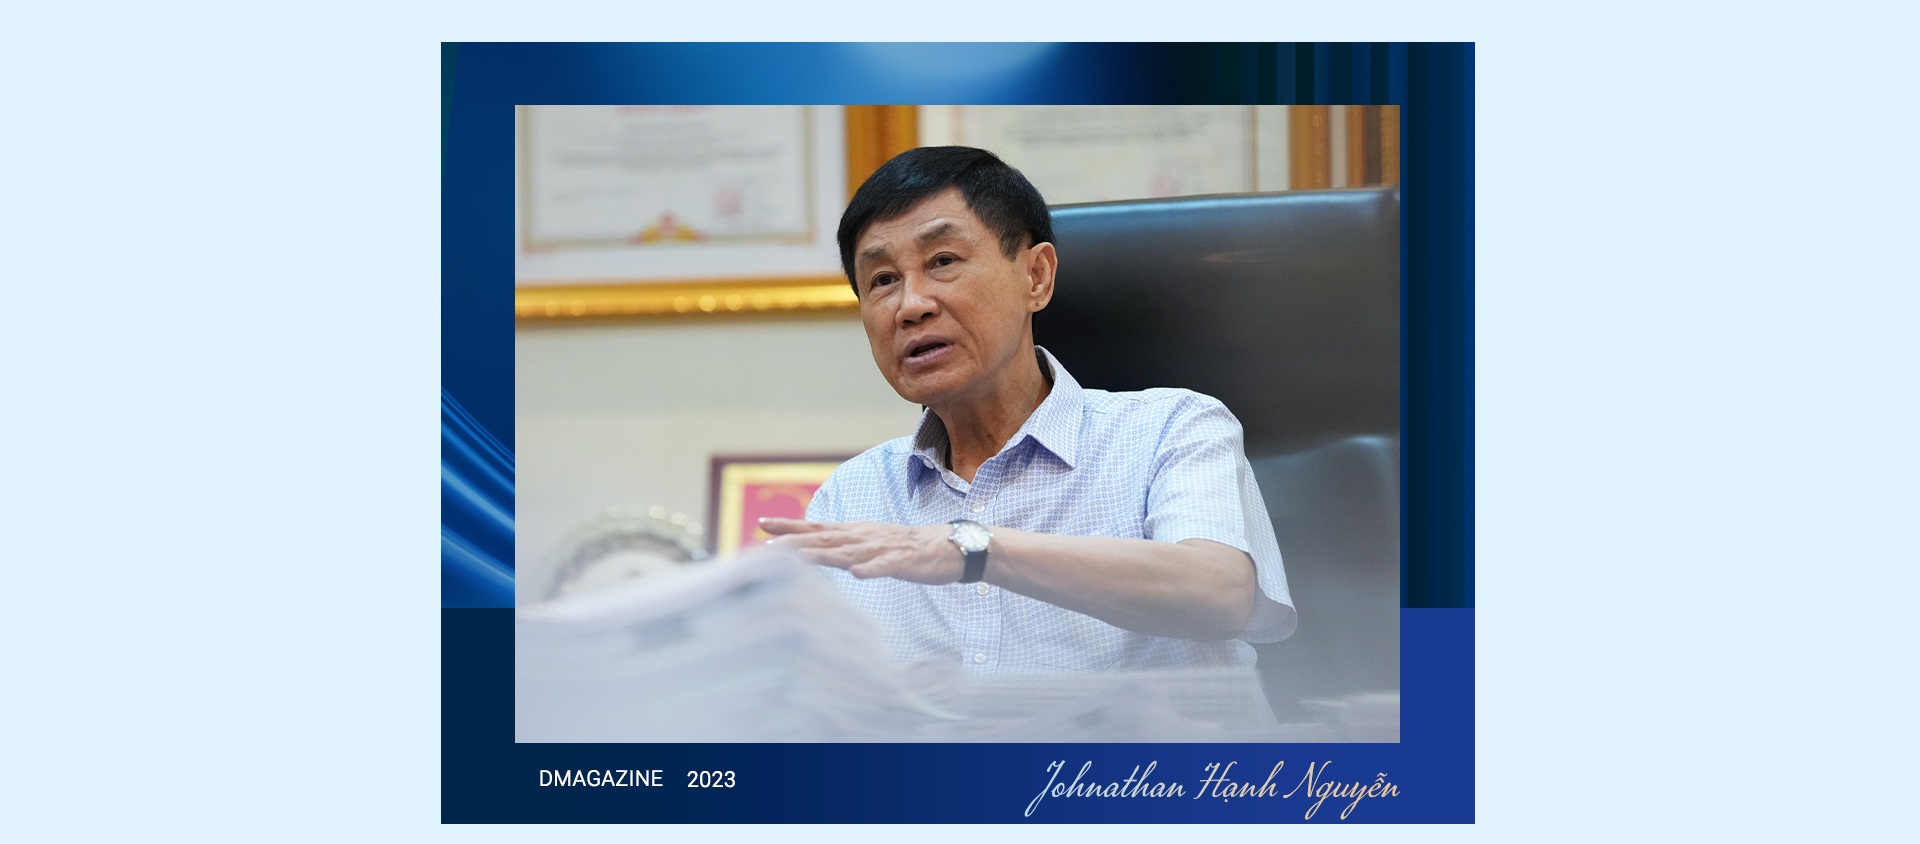 Cuộc gặp với cố Thủ tướng Phạm Văn Đồng thay đổi cuộc đời ông Johnathan Hạnh Nguyễn - 24